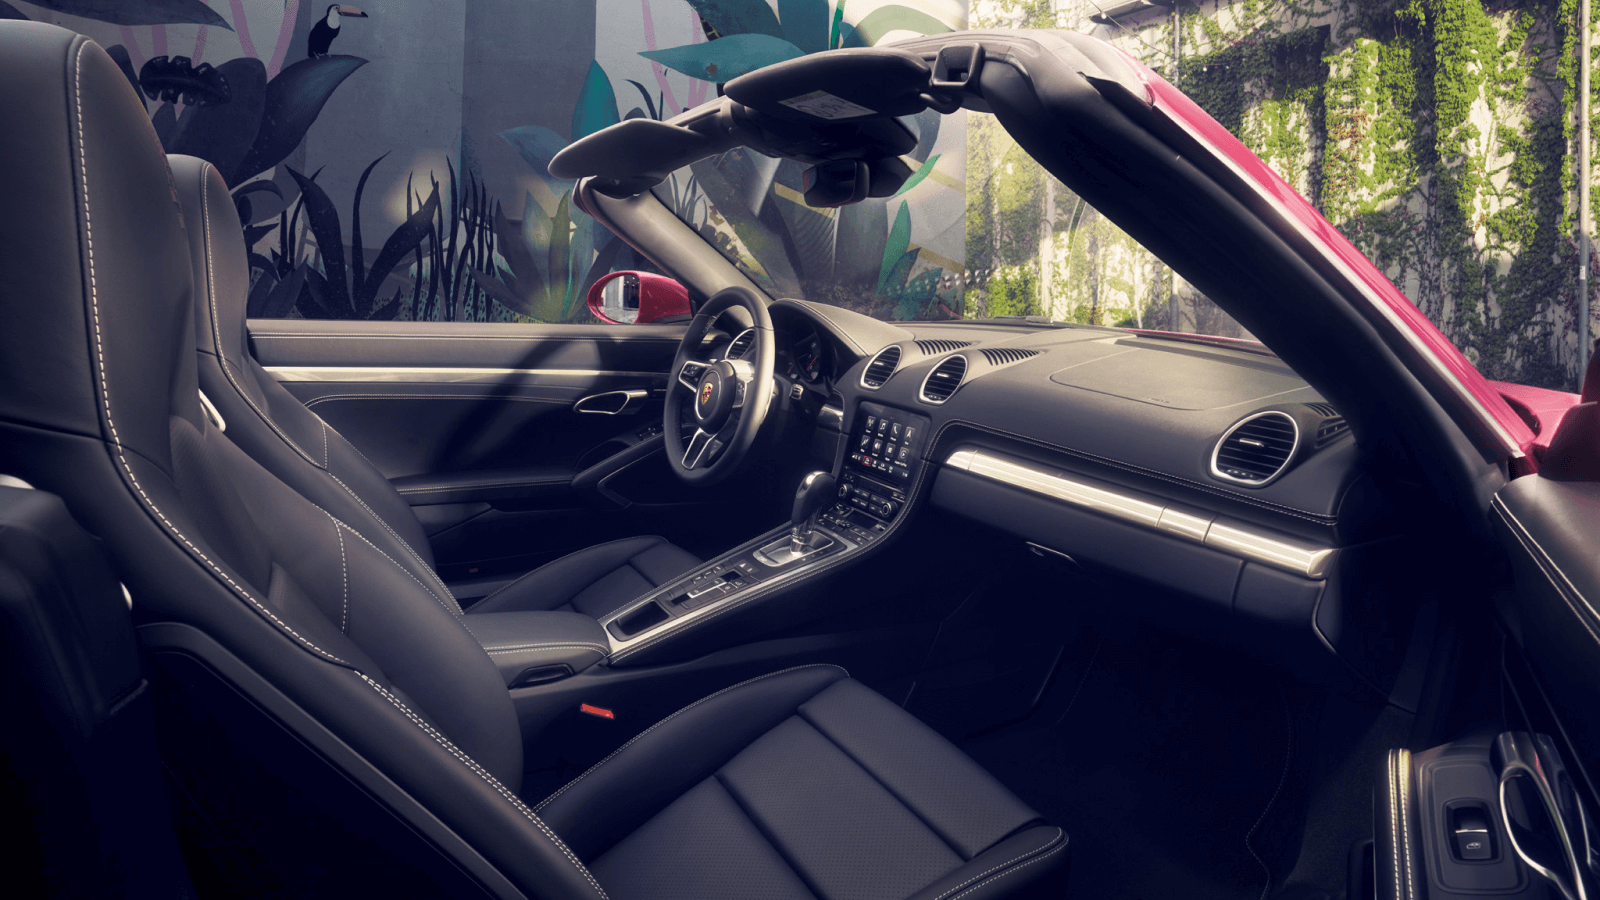 Porsche-Boxster Interior Cockpit